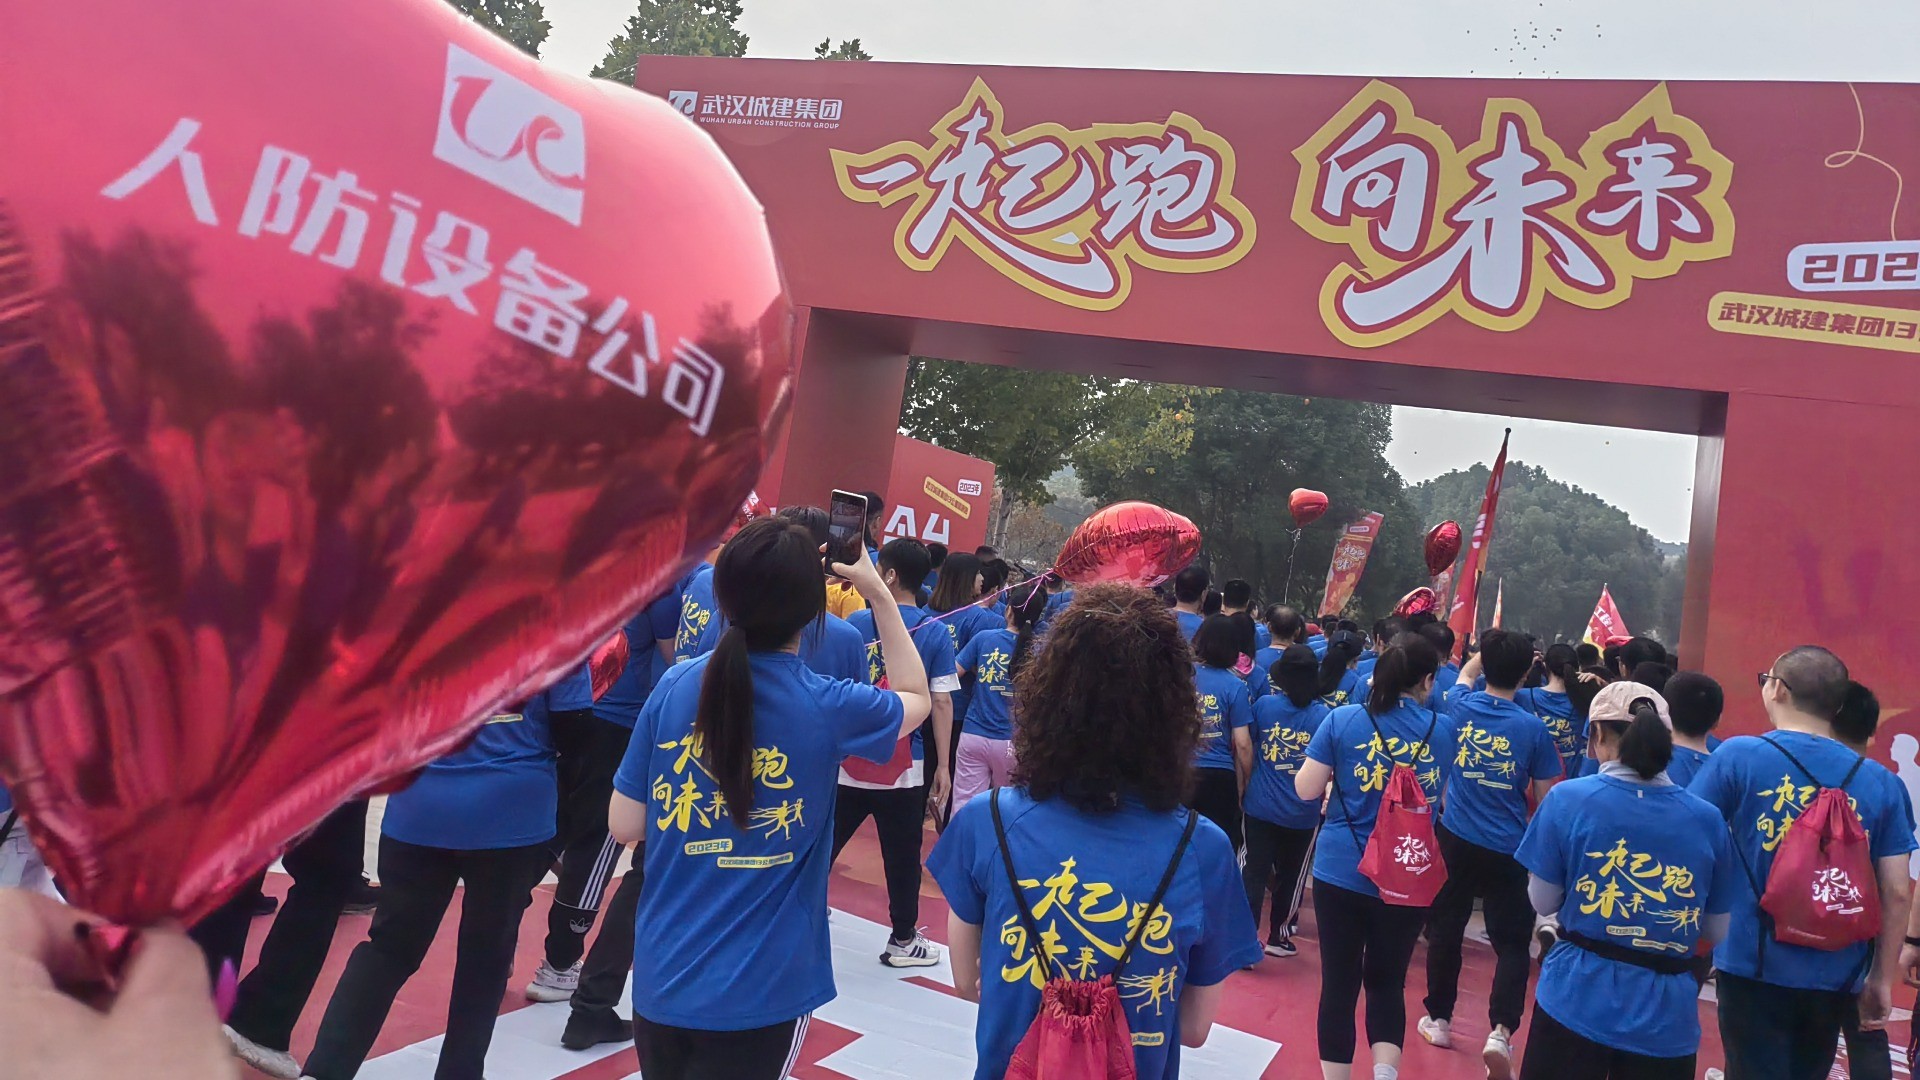 凝心聚力向前跑 擘画新篇向未来丨人防公司参加武汉城建集团职工健康跑活动